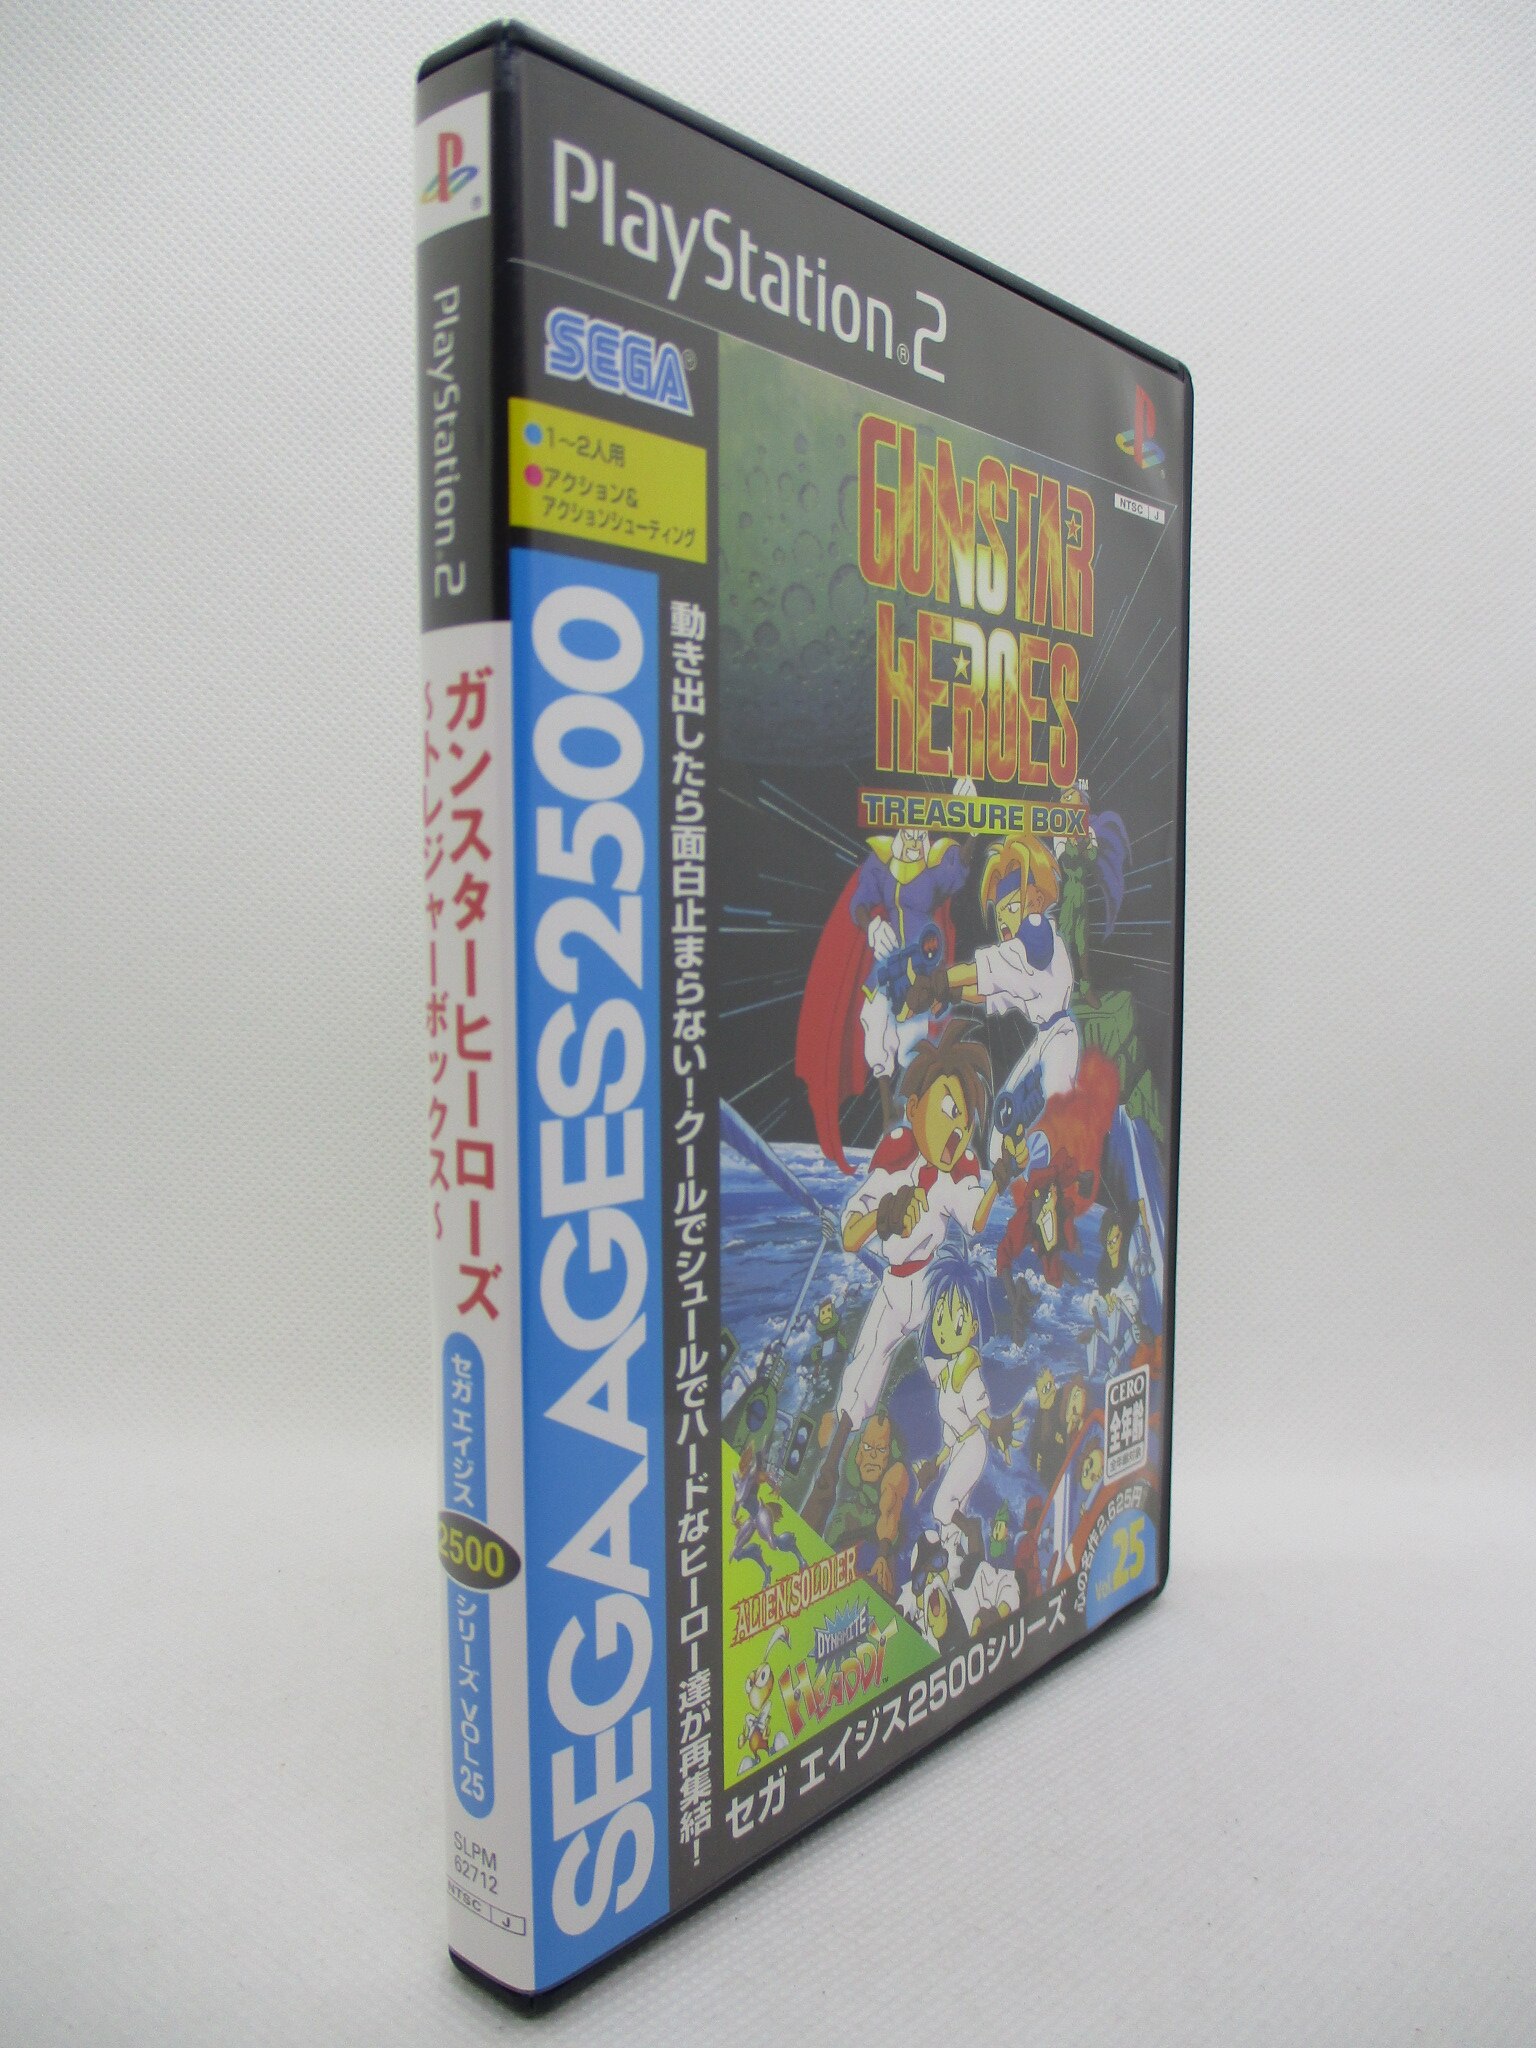 PS2 ガンスターヒーローズ トレジャーボックス セガ エイジス2500 ...